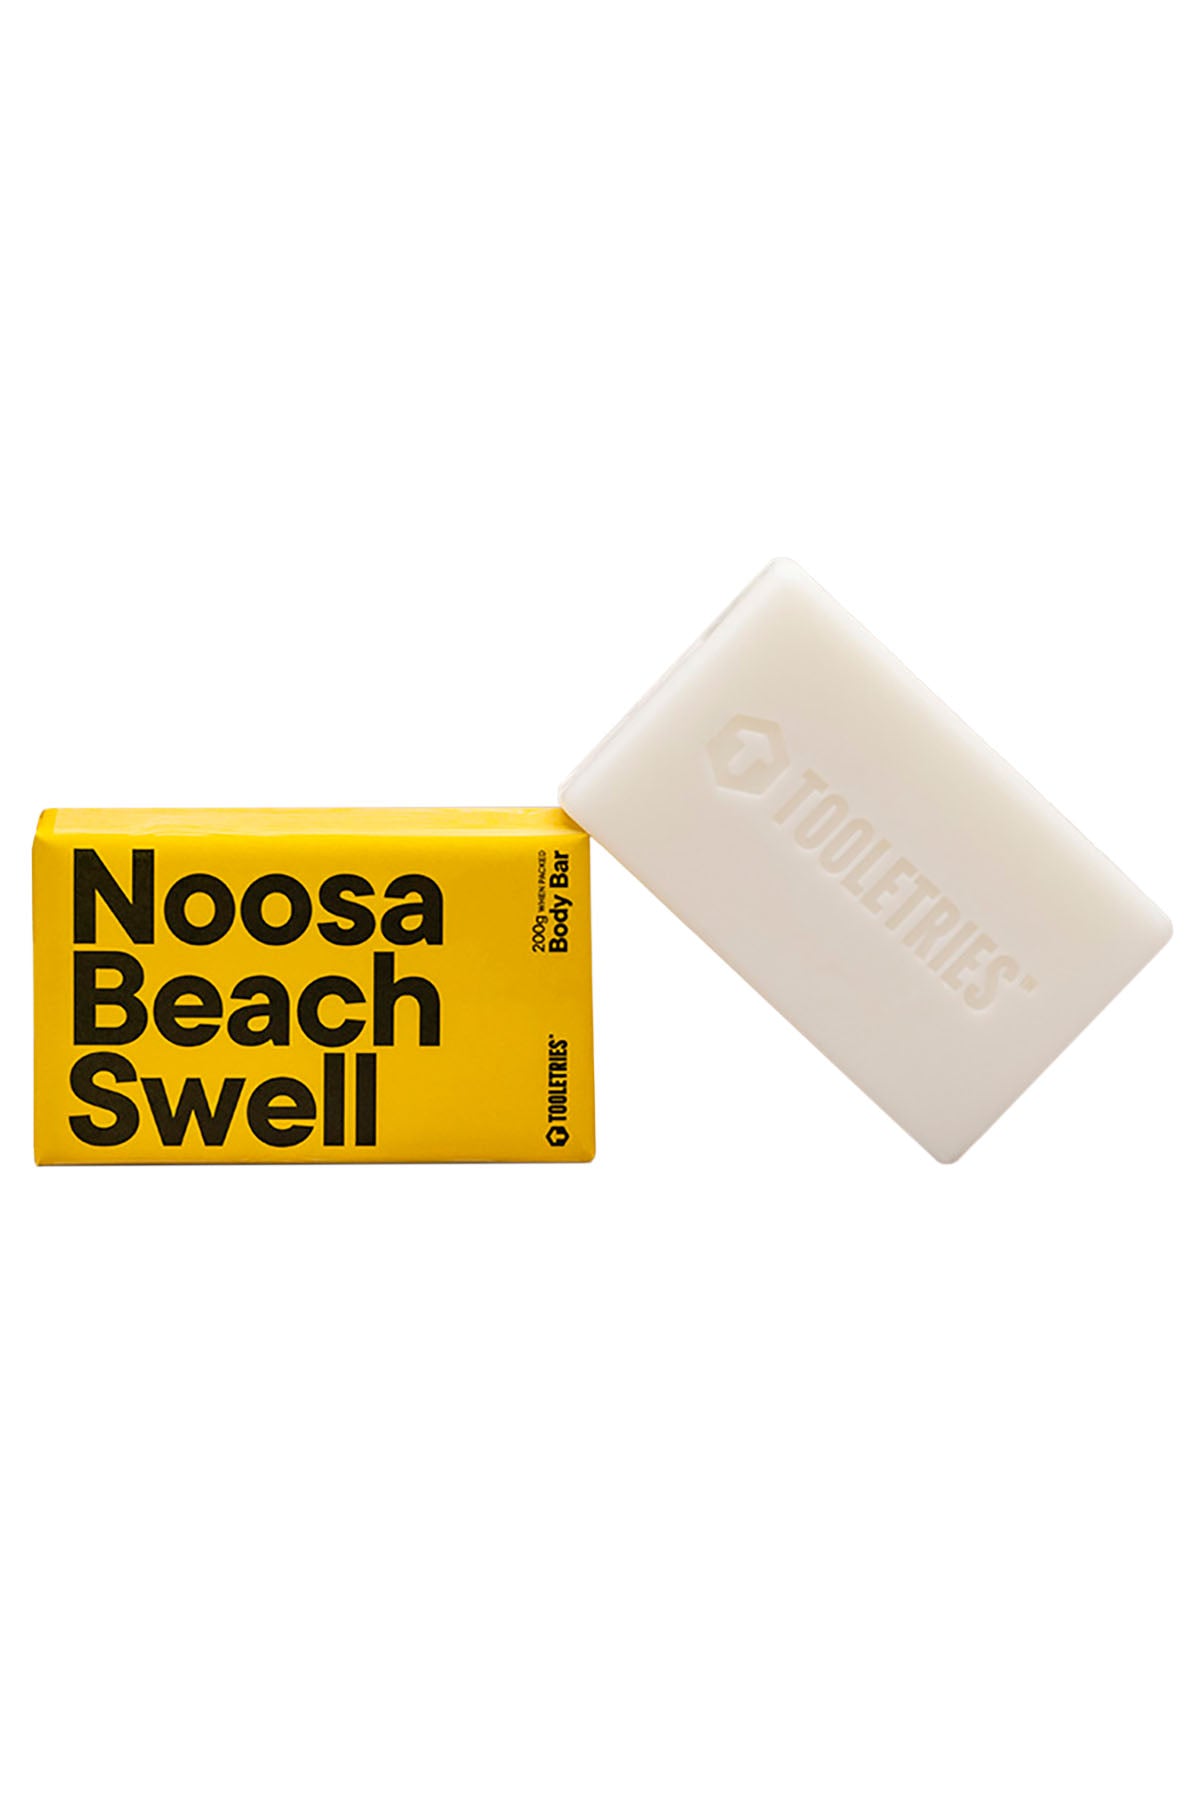 Tooletries Noosa Beach Swell Bar Soap 200 g